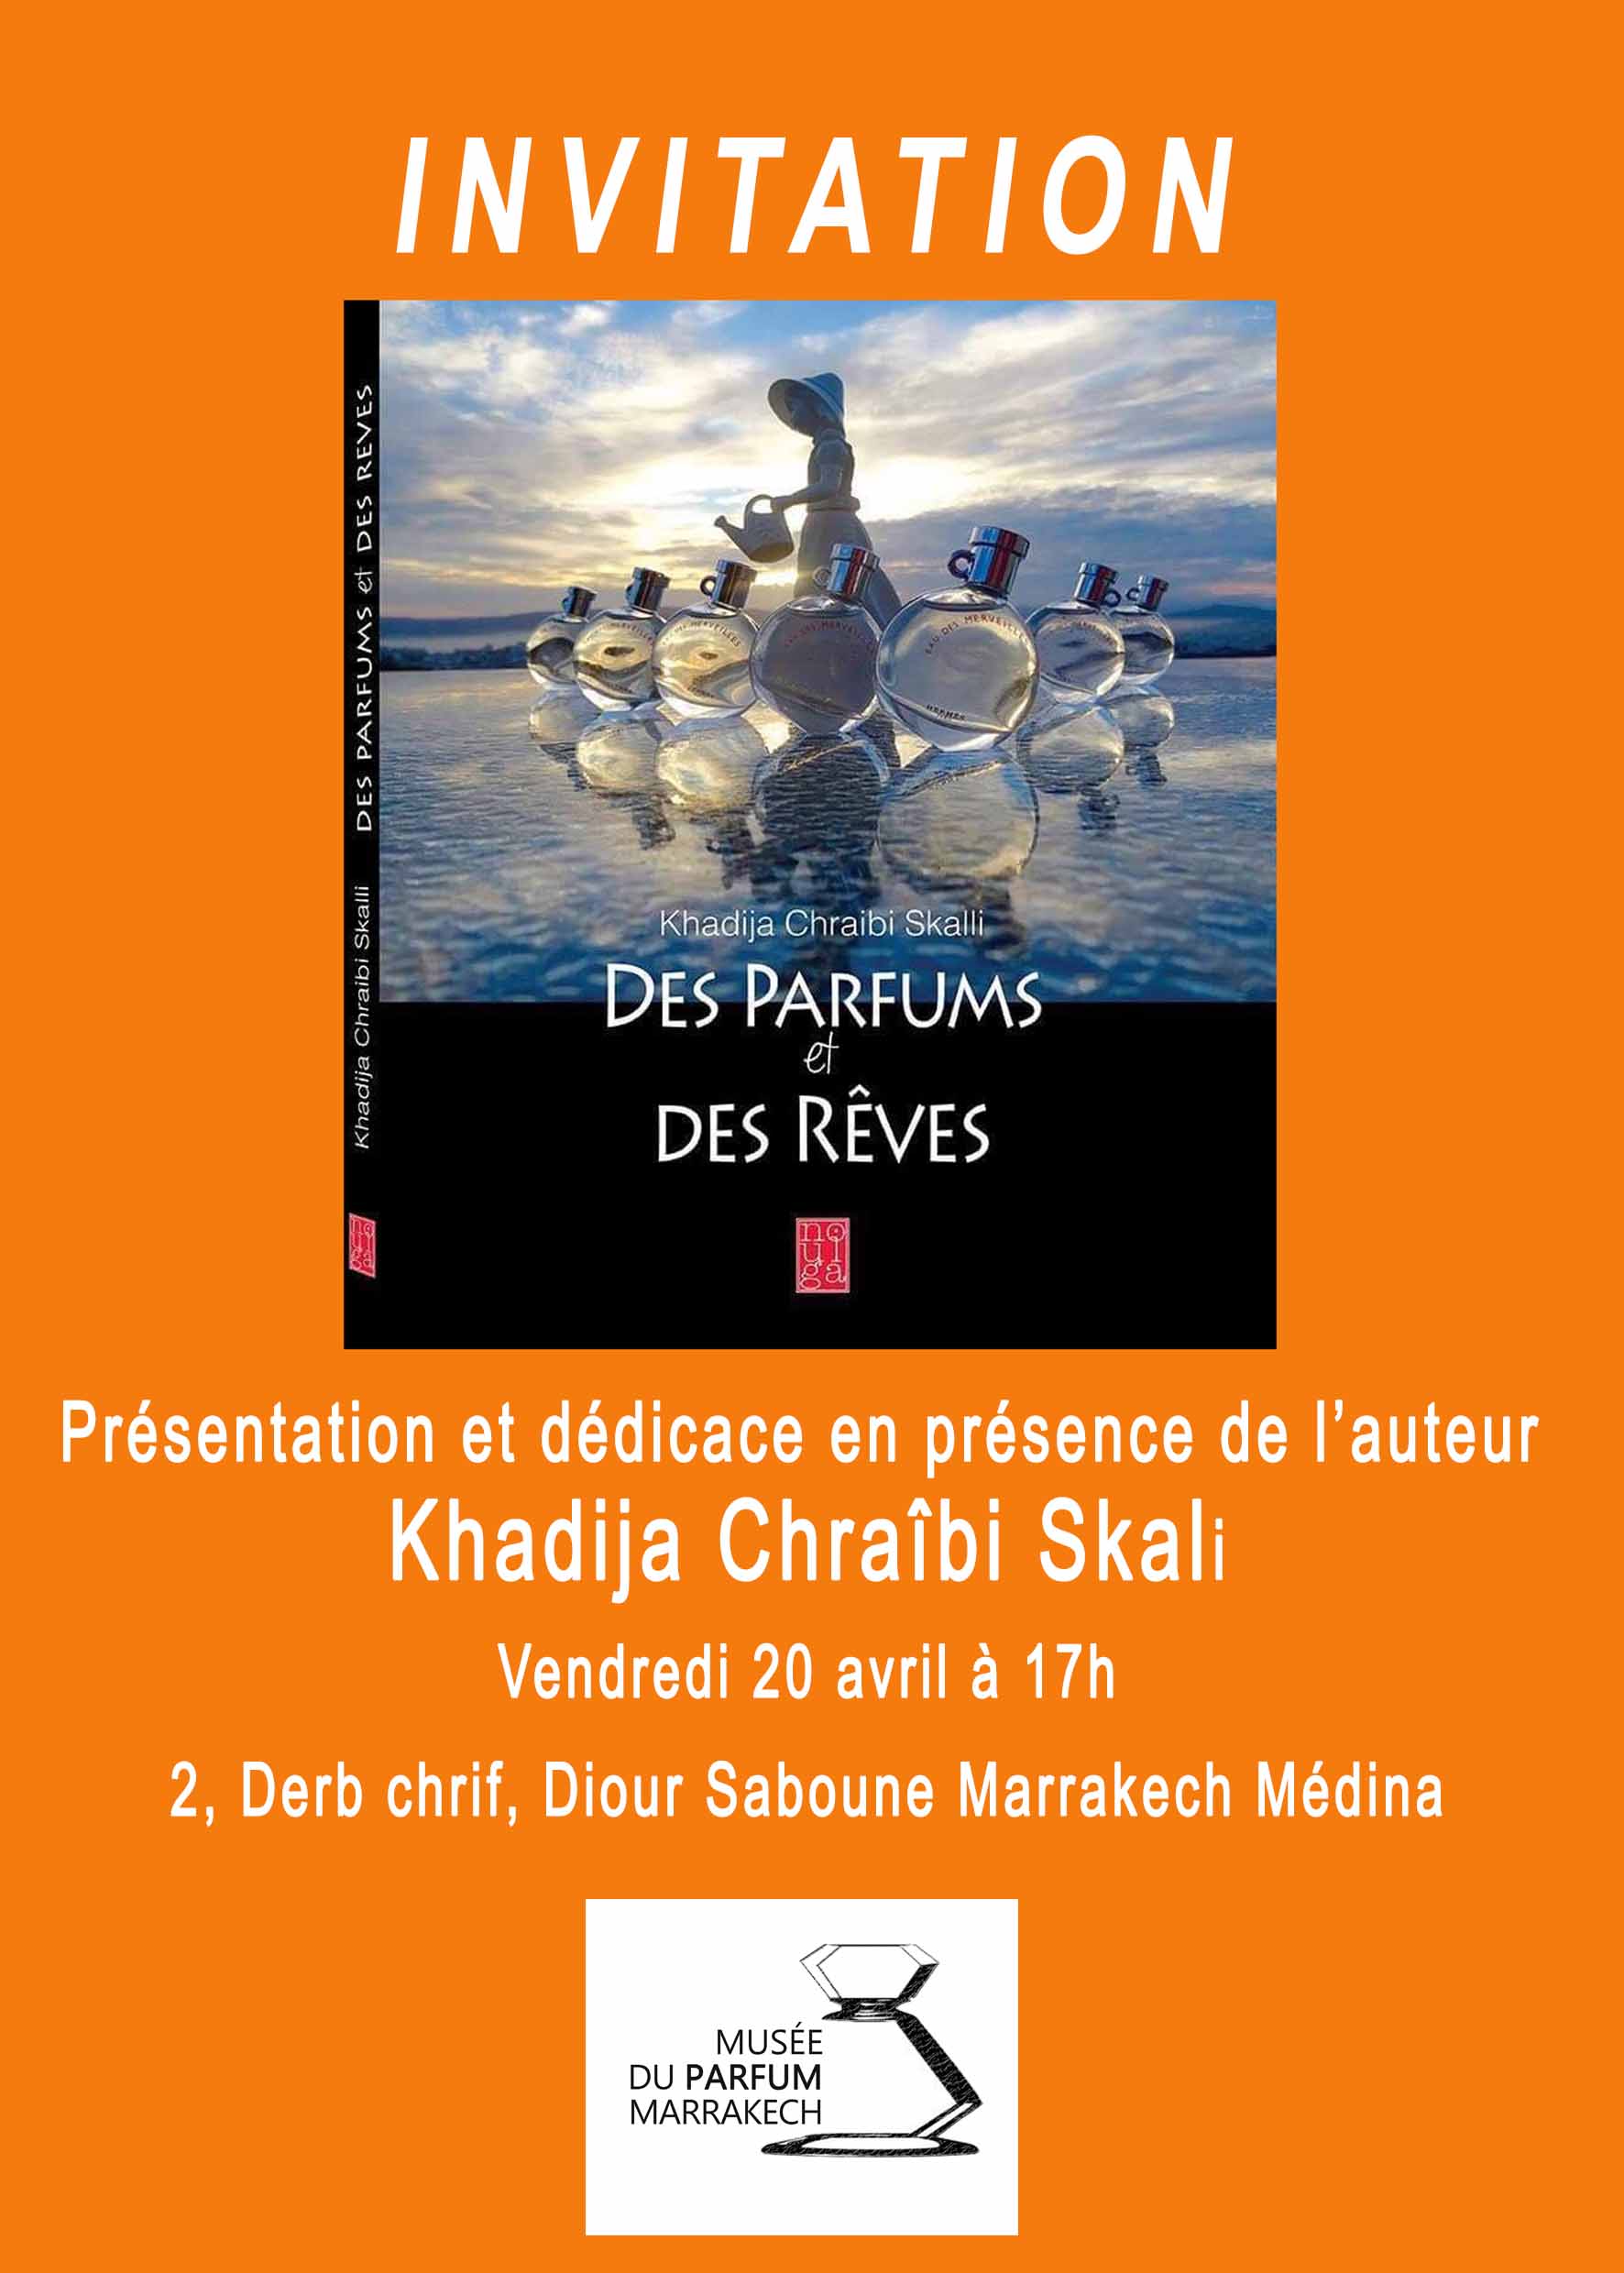 Présentation et dédicace du livre de Khadija Chraibi